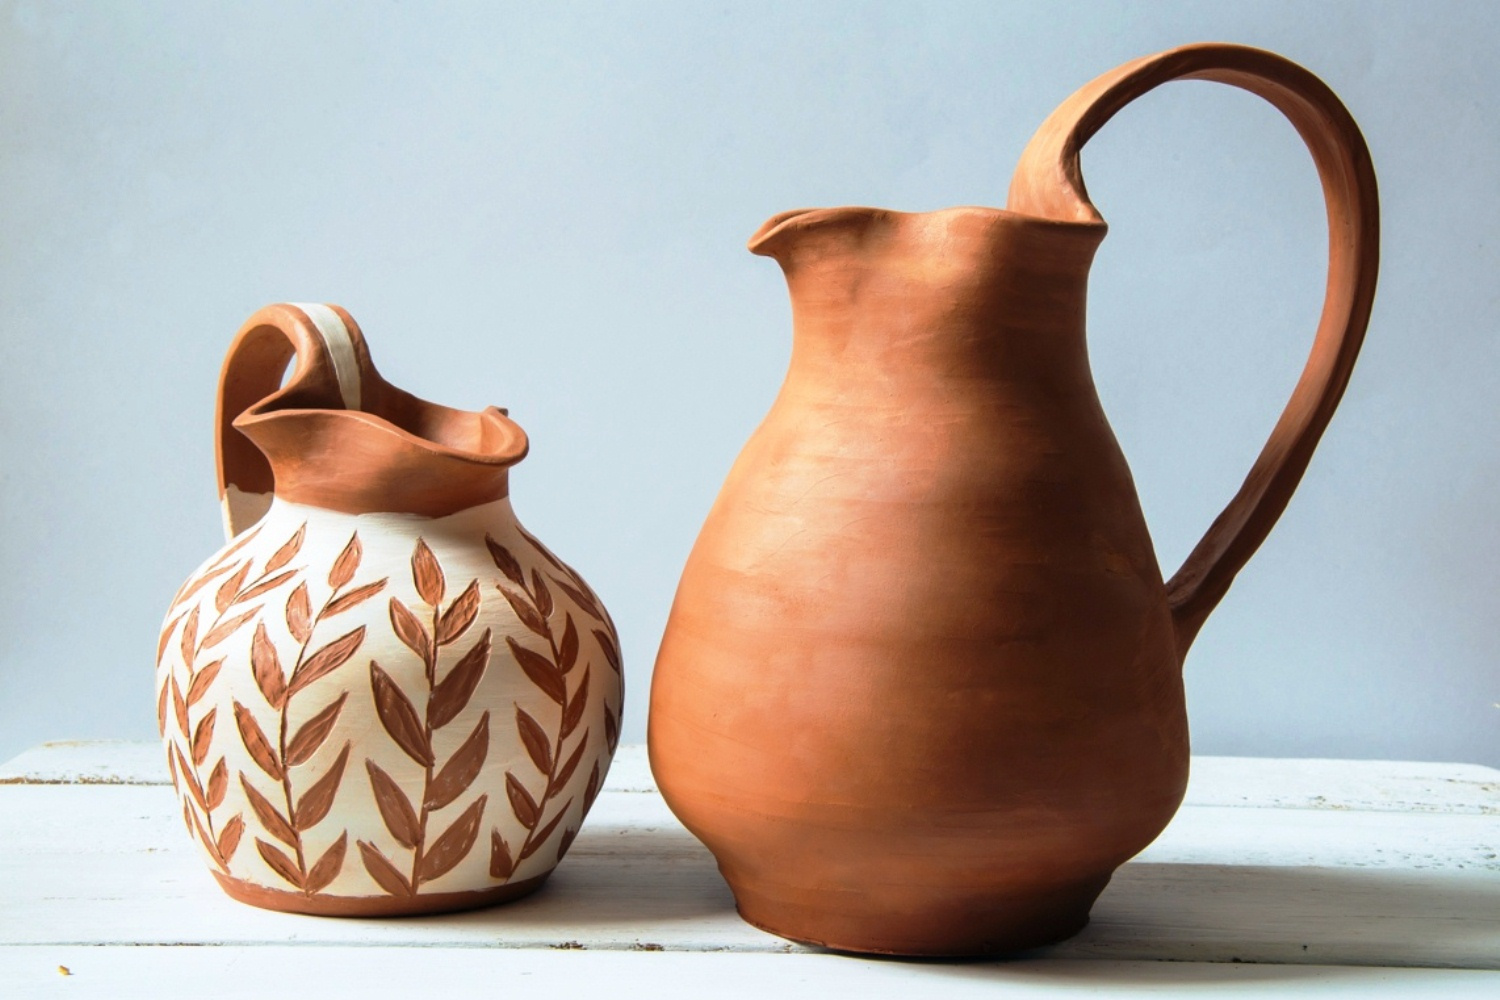 Эти греческие вазы — ойнахойи — Валентина сделала сама